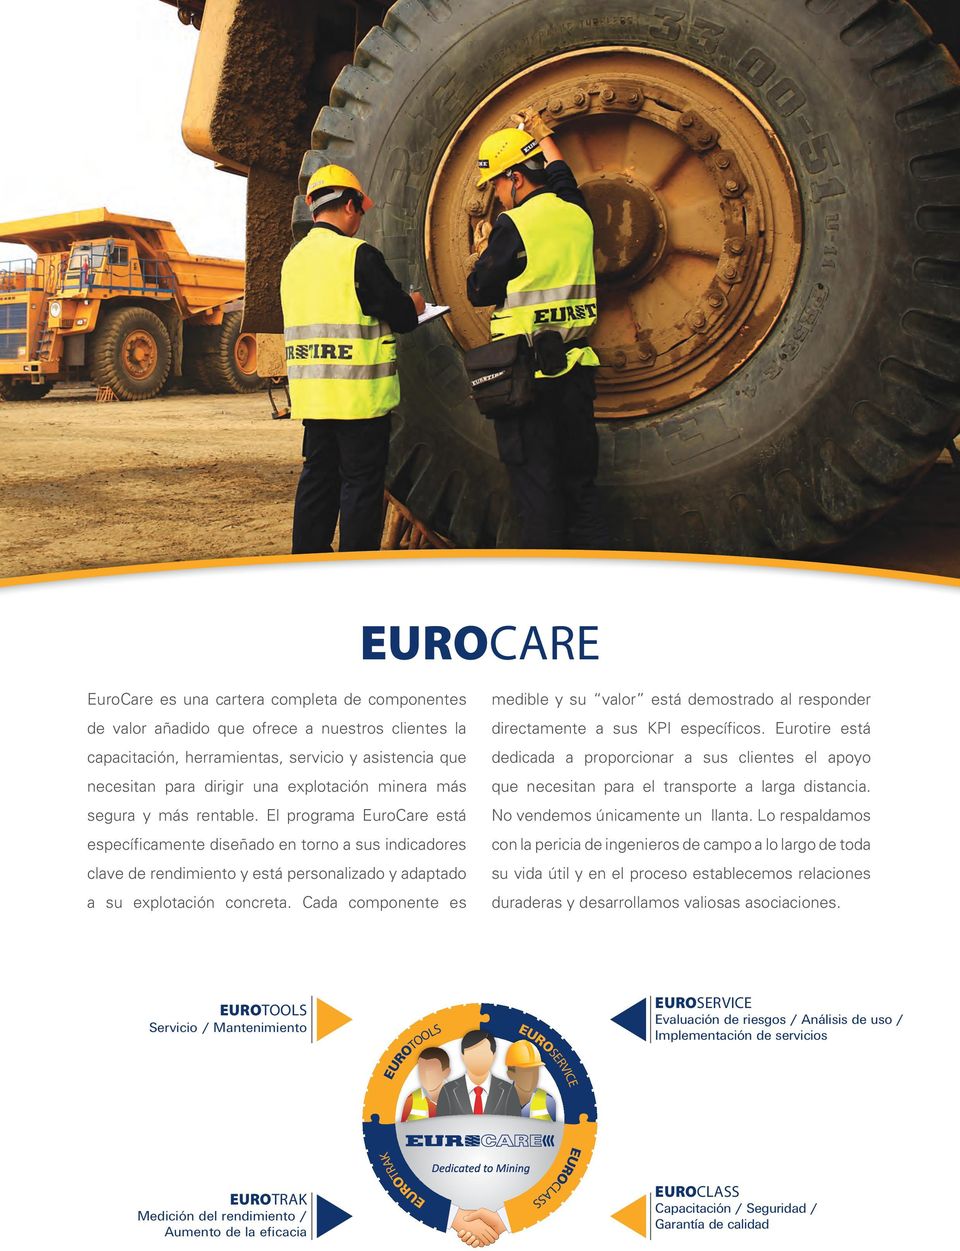 El programa EuroCare está específicamente diseñado en torno a sus indicadores clave de rendimiento y está personalizado y adaptado a su explotación concreta.